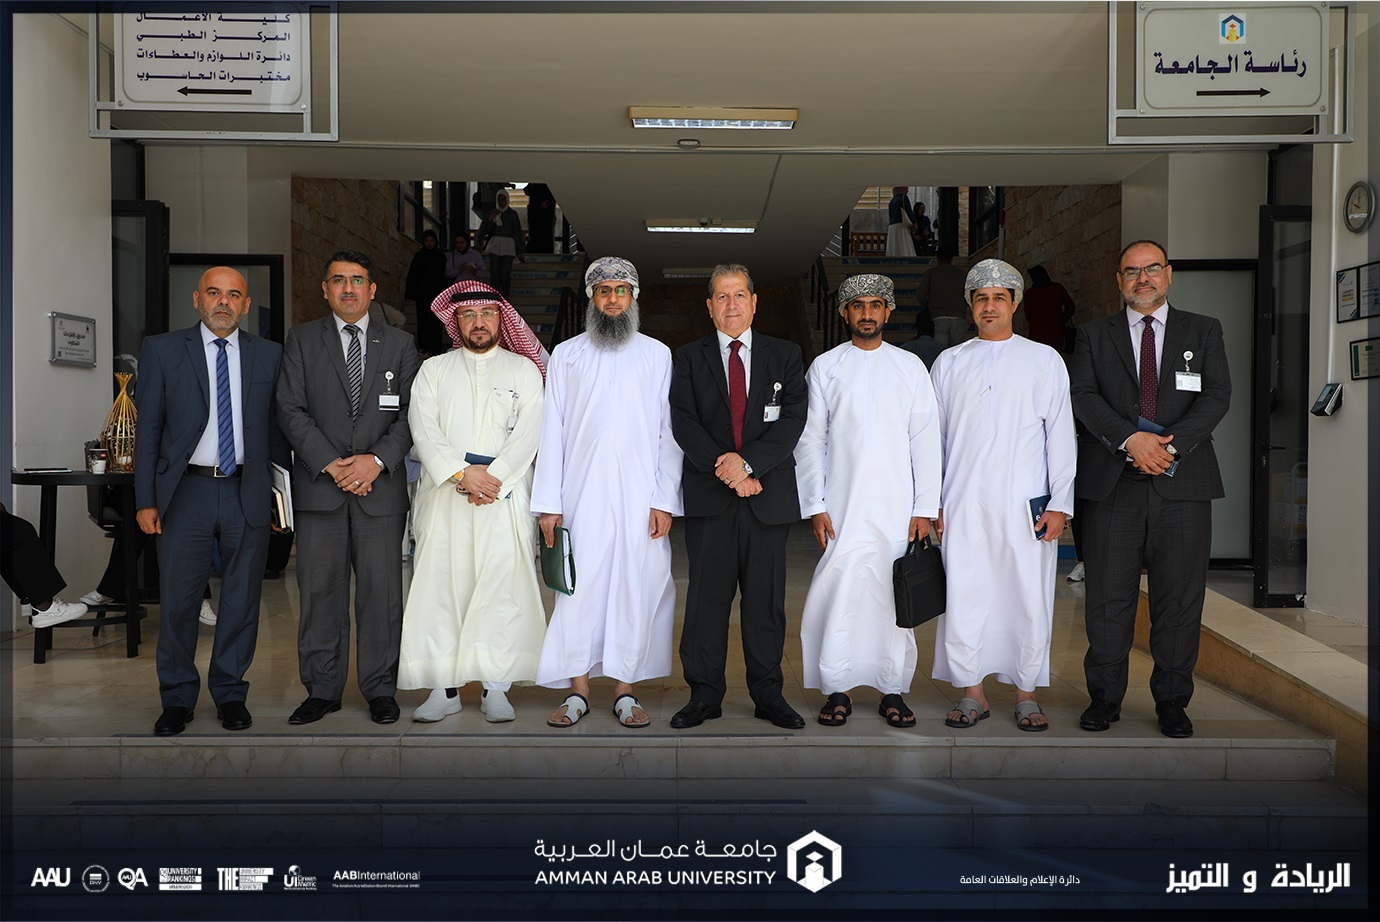 وفد التعليم العالي العُماني يطلع على إنجازات "عمان العربية" ويتطلع لتعزيز التعاون الأكاديمي 